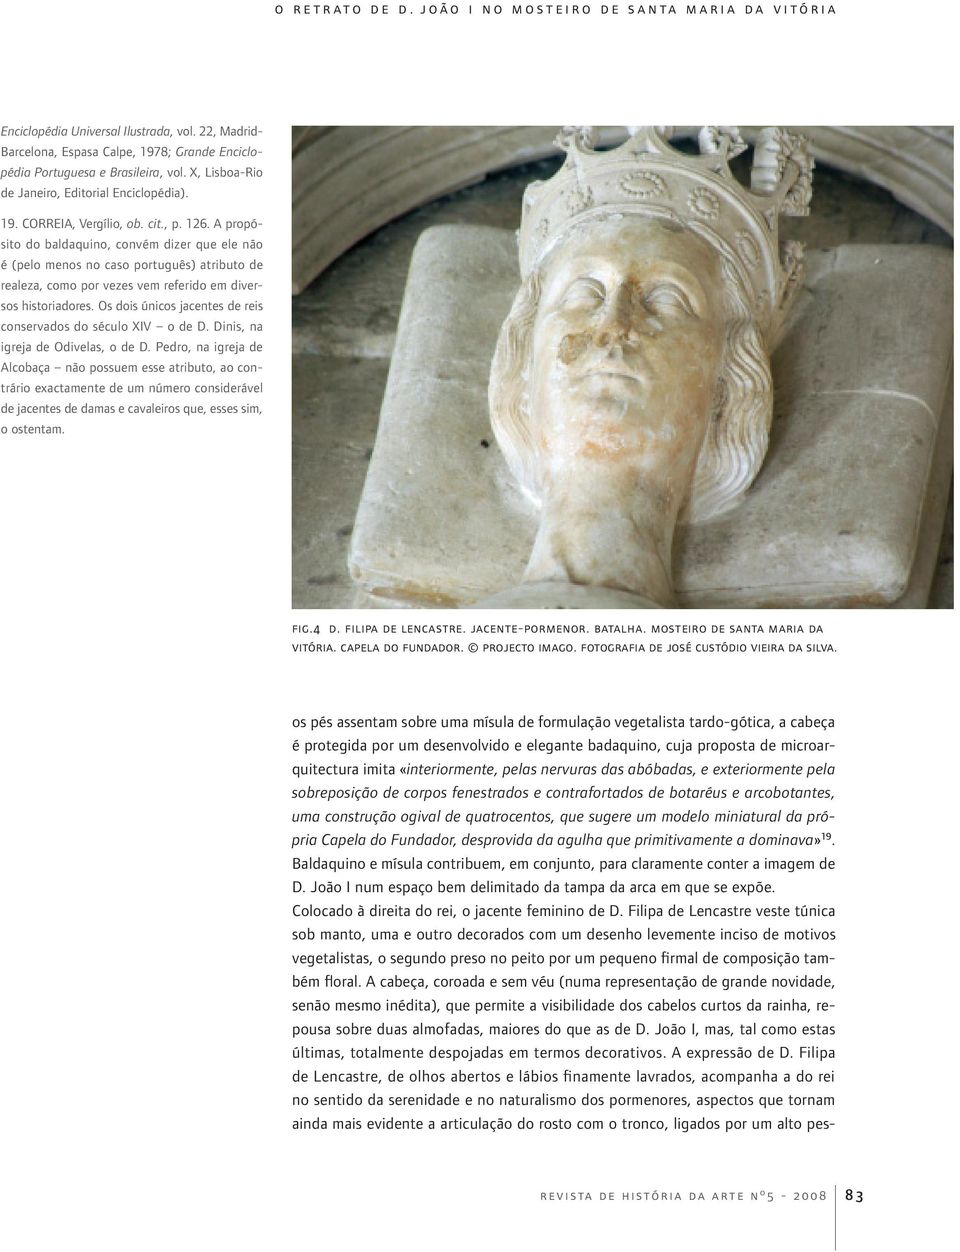 Os dois únicos jacentes de reis conservados do século XIV o de D. Dinis, na igreja de Odivelas, o de D.